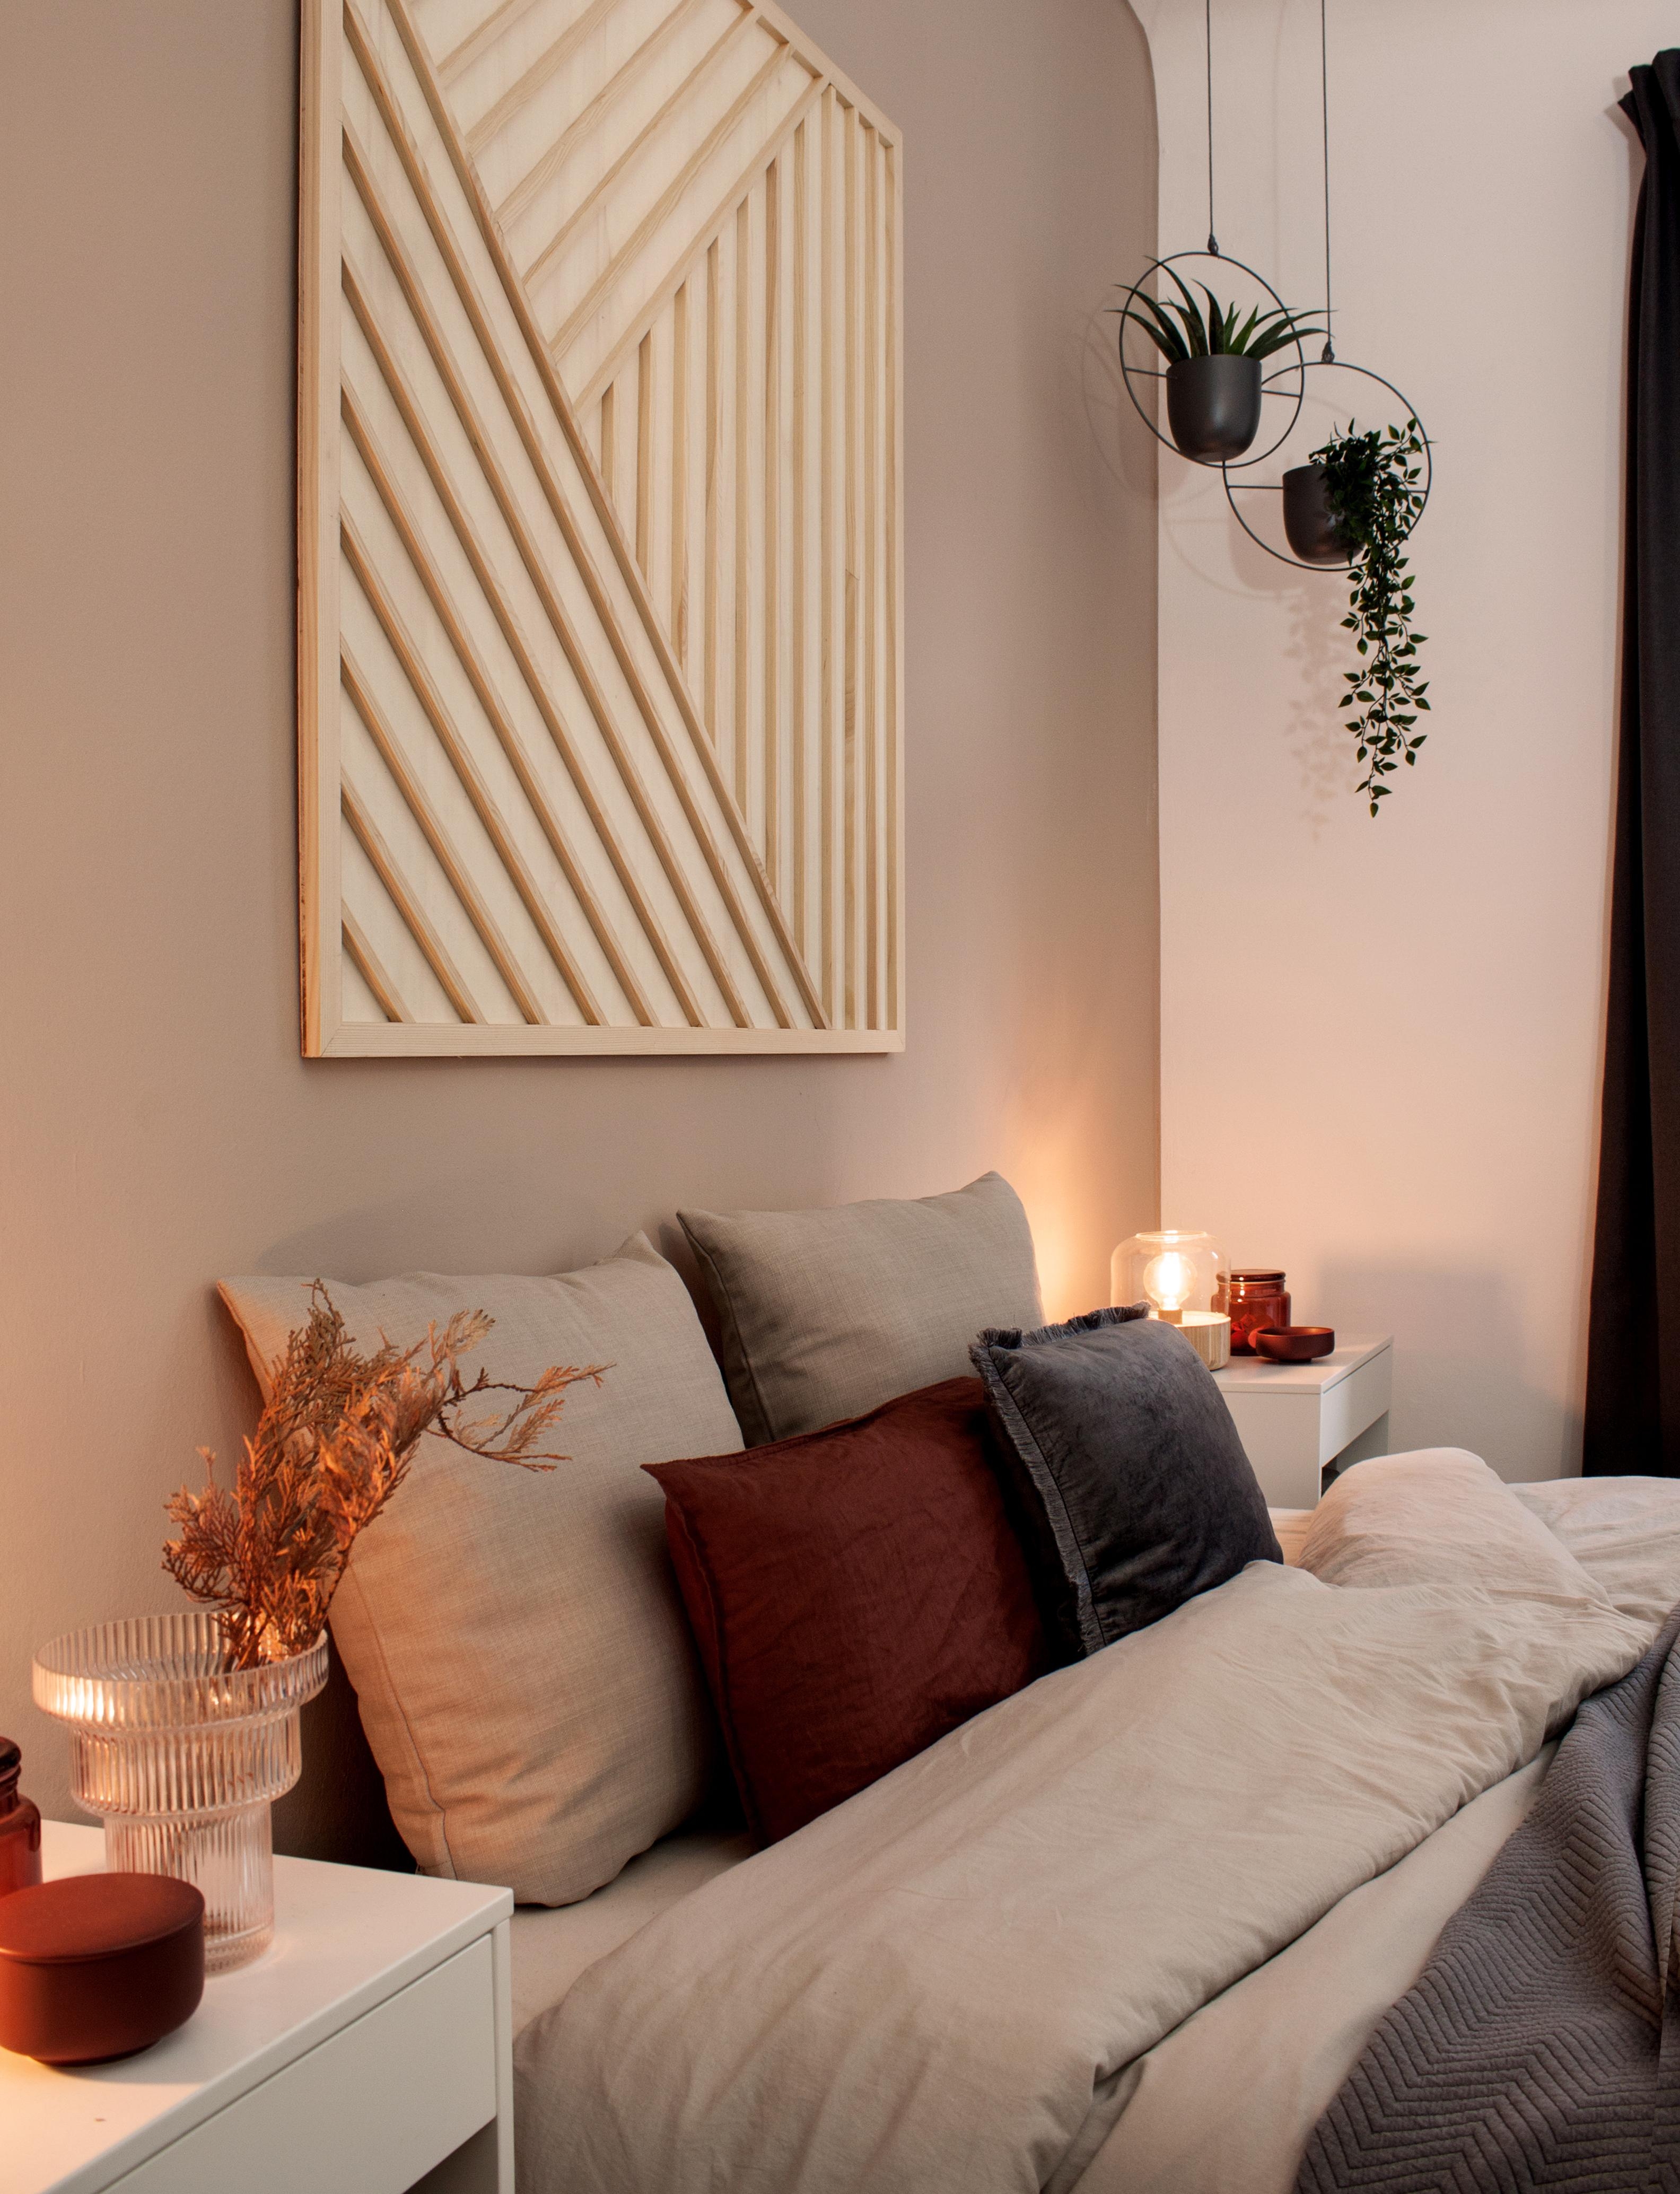 Meine liebste und selbstgebaute #wanddeko in unserem Schlafzimmer ♡ 
#livingchallenge #DIY #couchstyle #DIYwalldecor